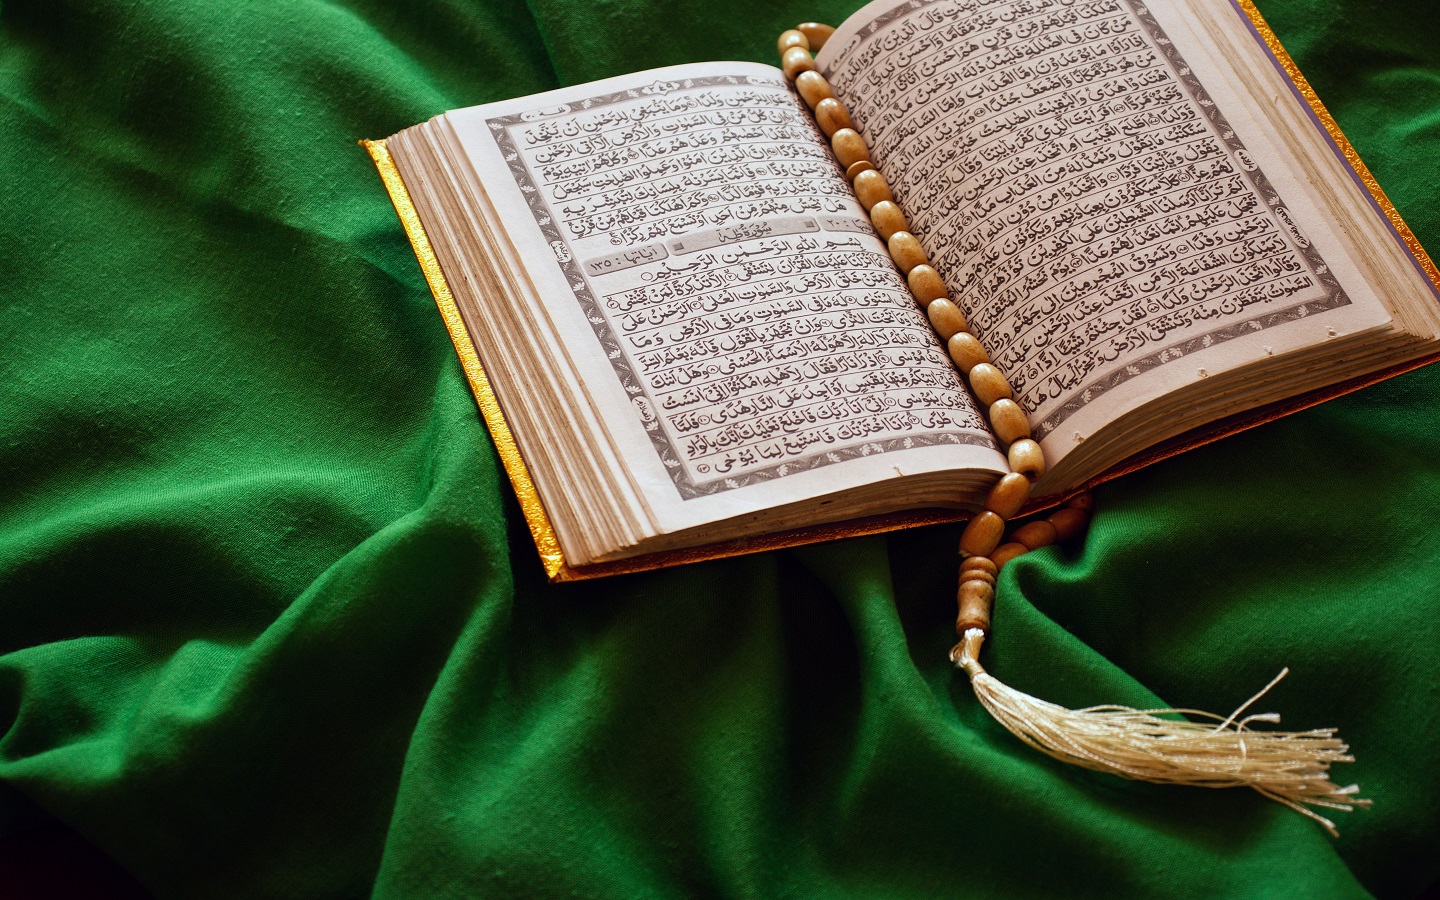 Holy Al Quran